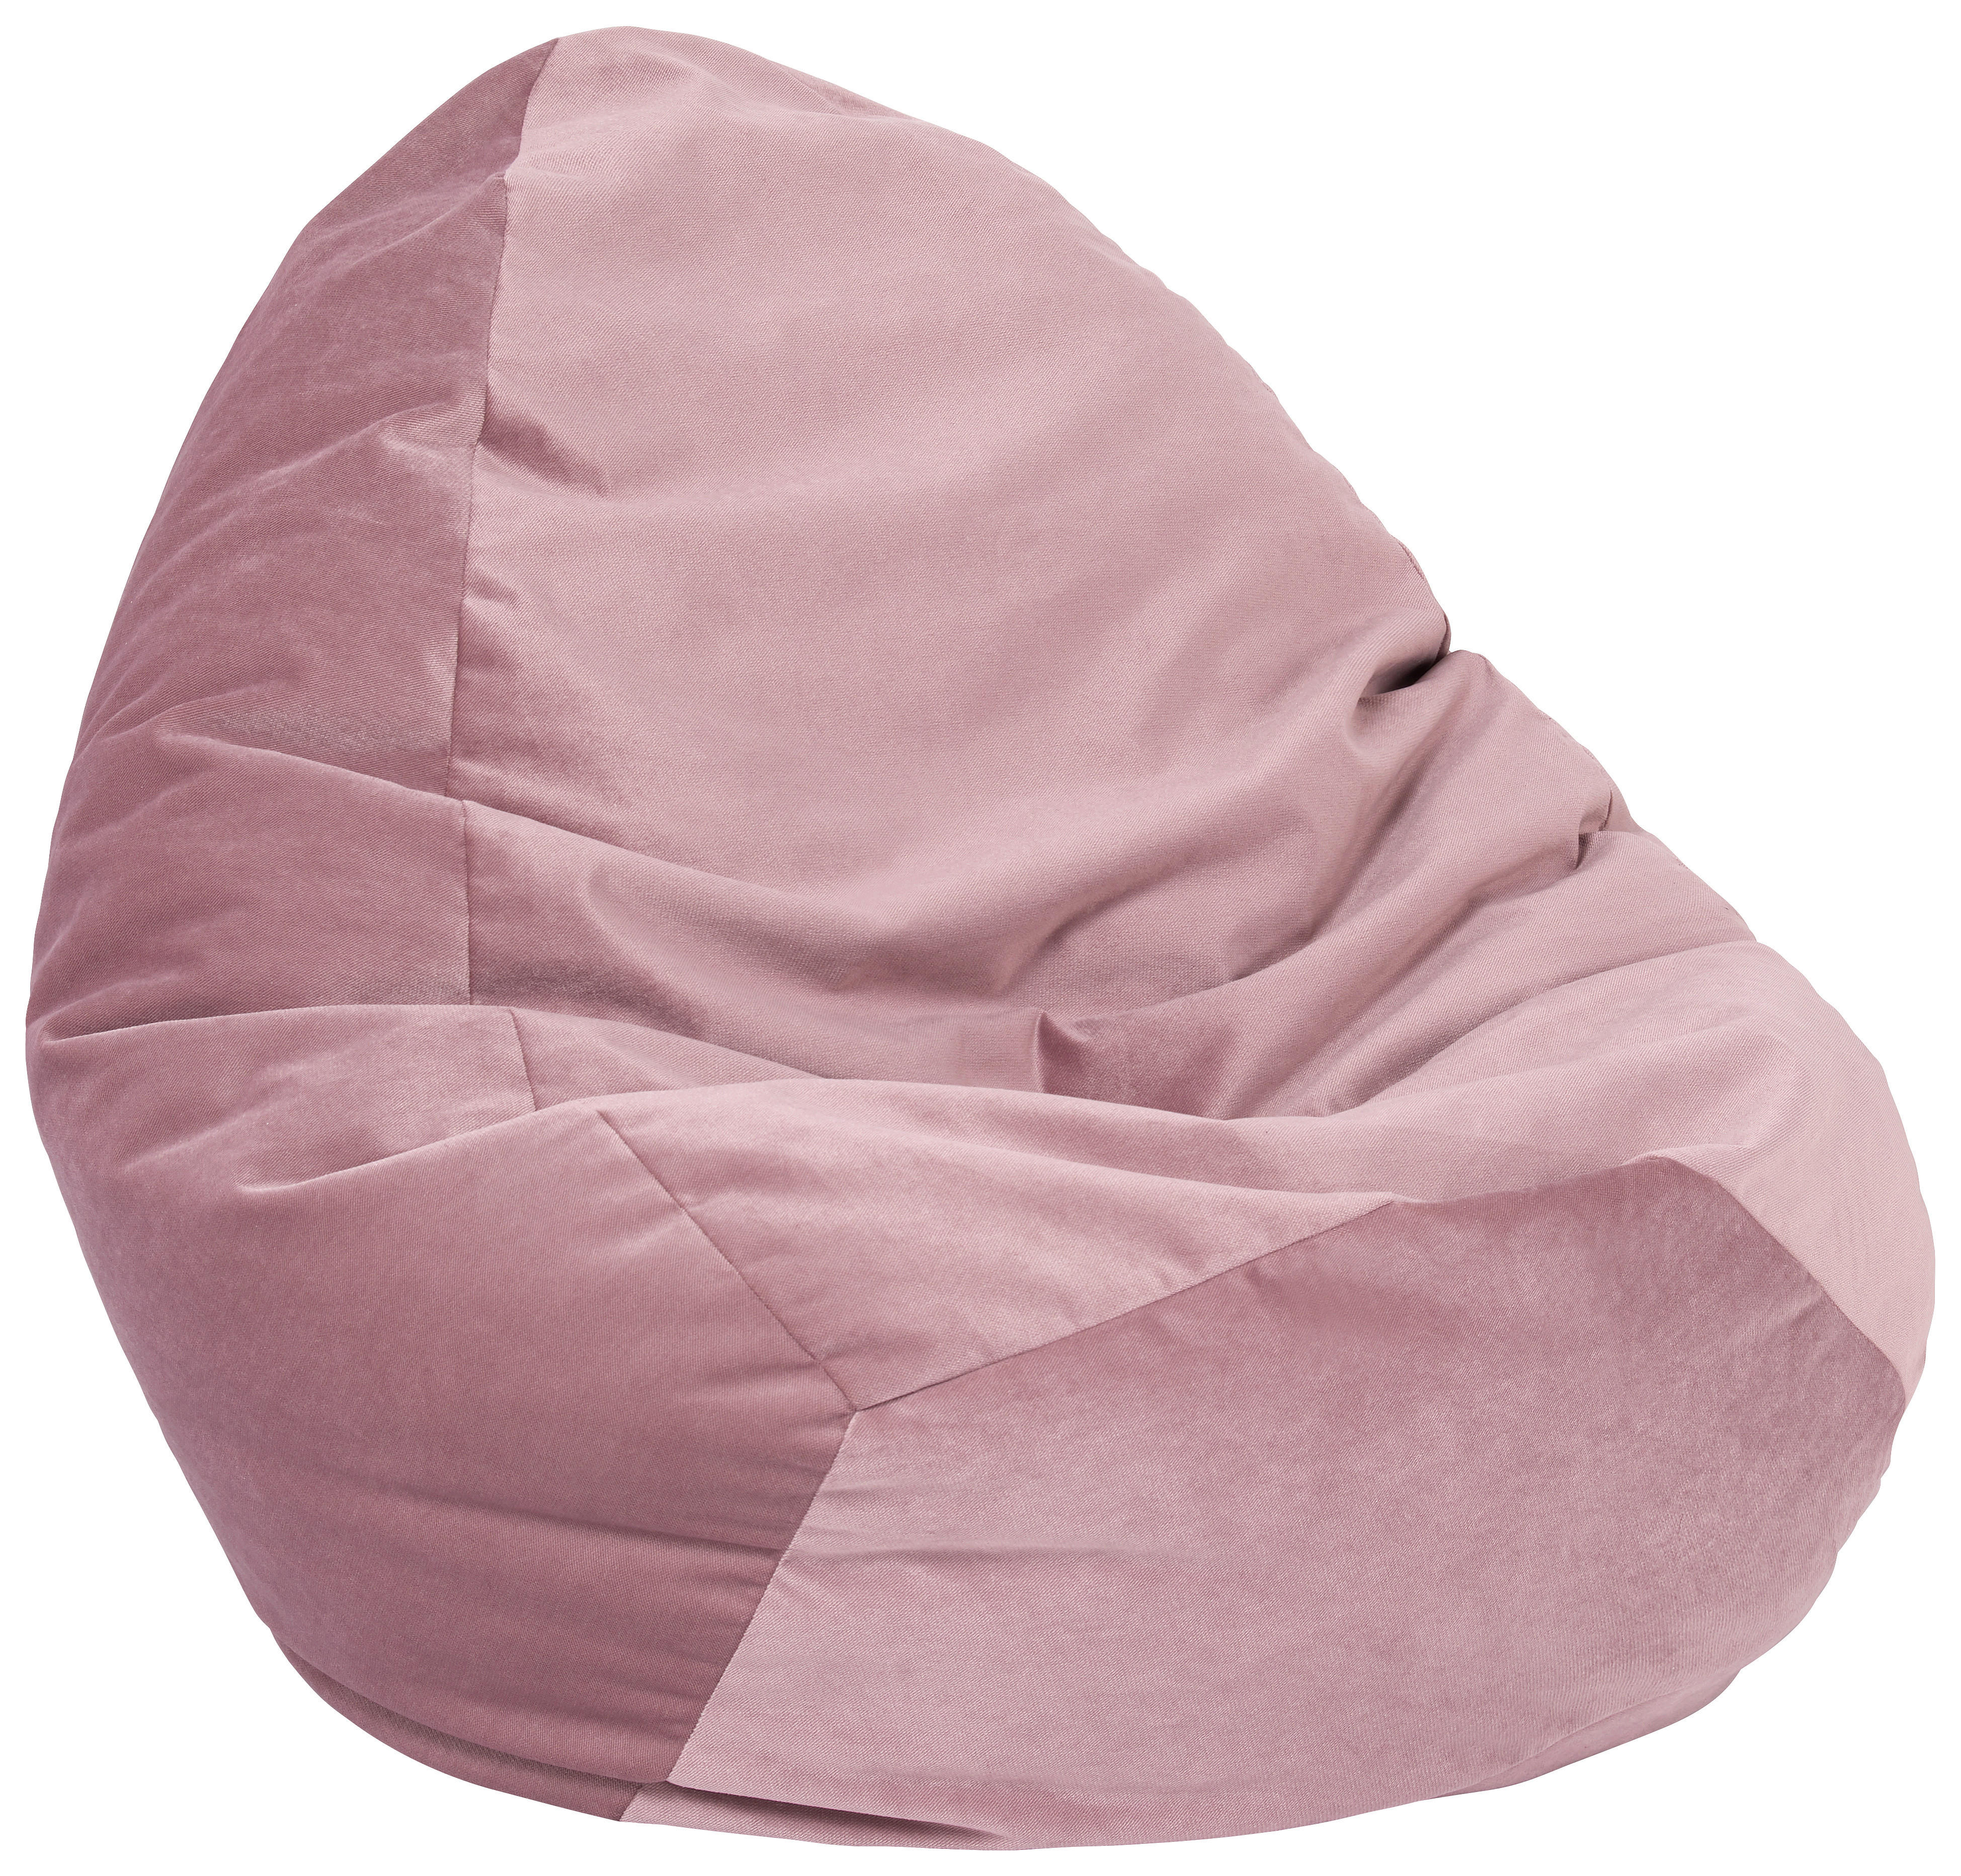 ÜLŐZSÁK 270 l  - Halvány rózsaszín, Design, Textil (70/80/70cm) - Carryhome